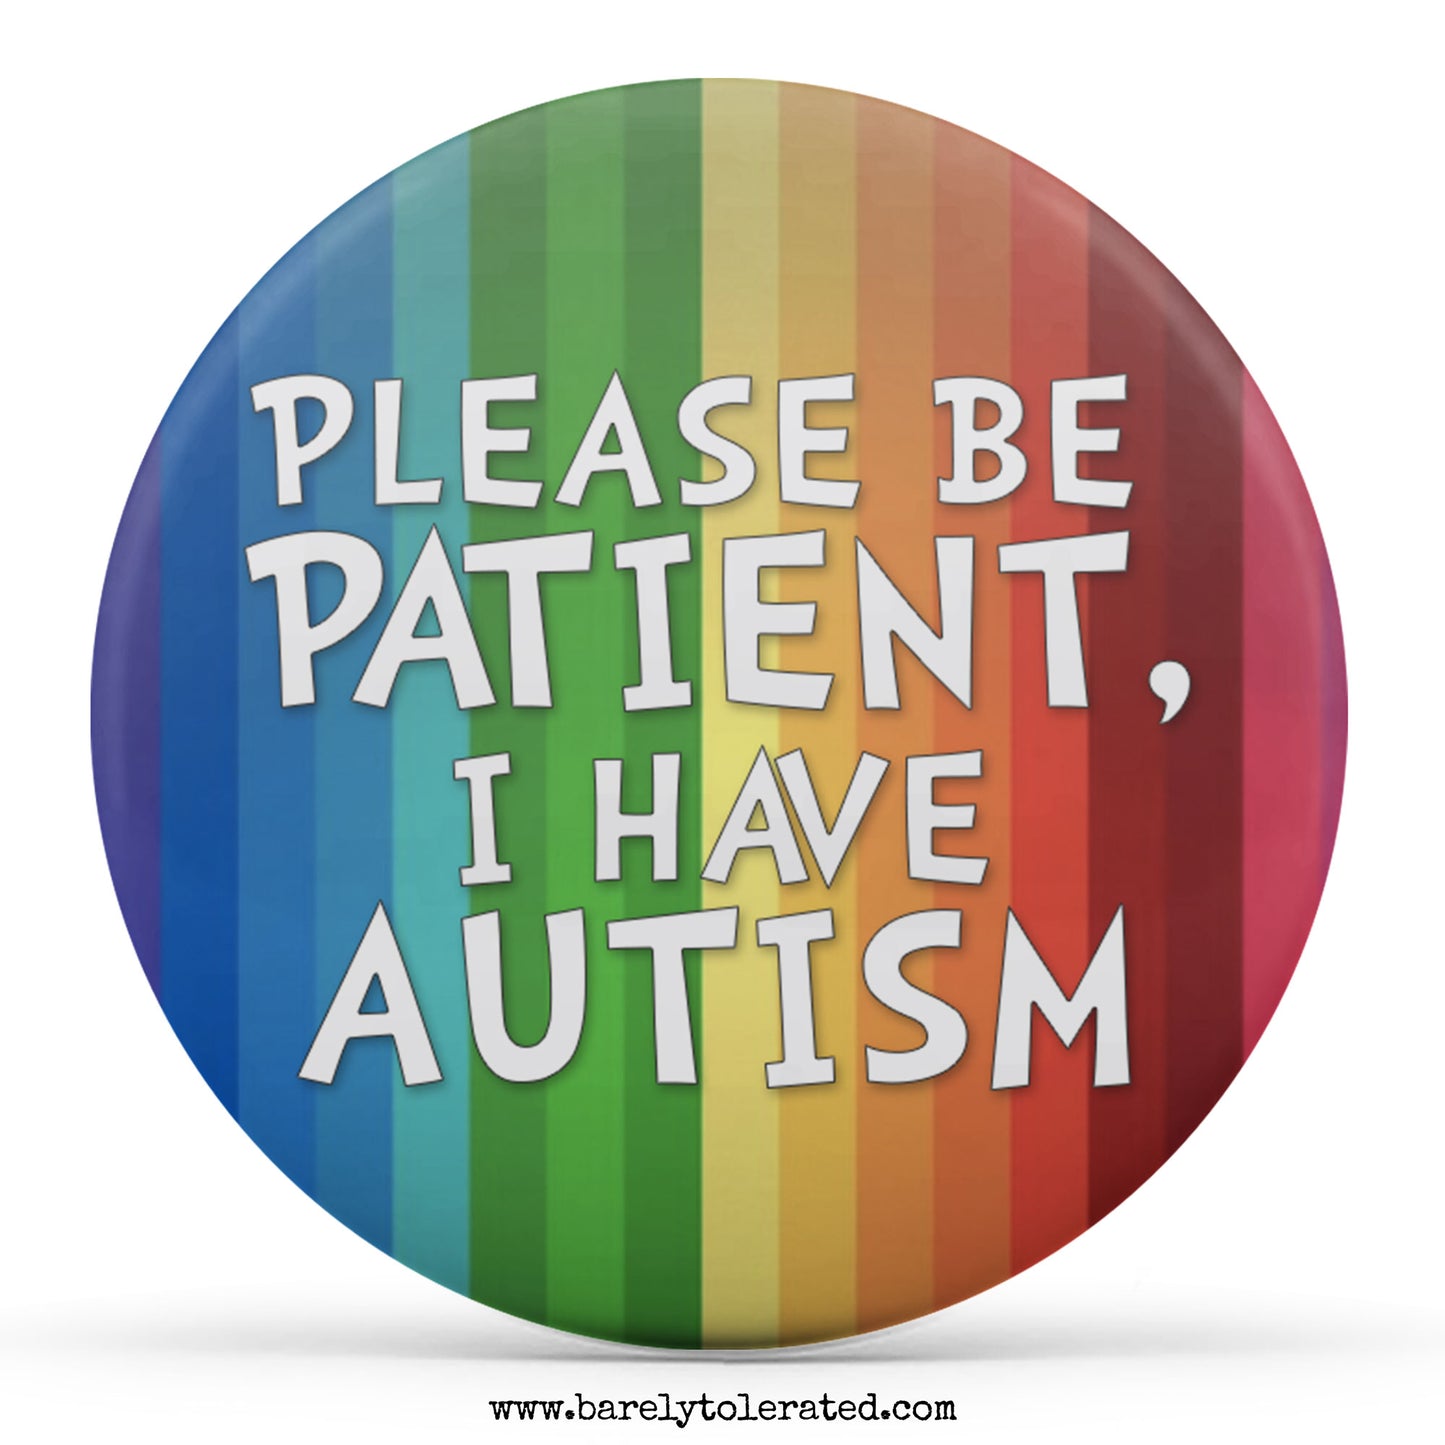 Please Be Patient, I Have Autism